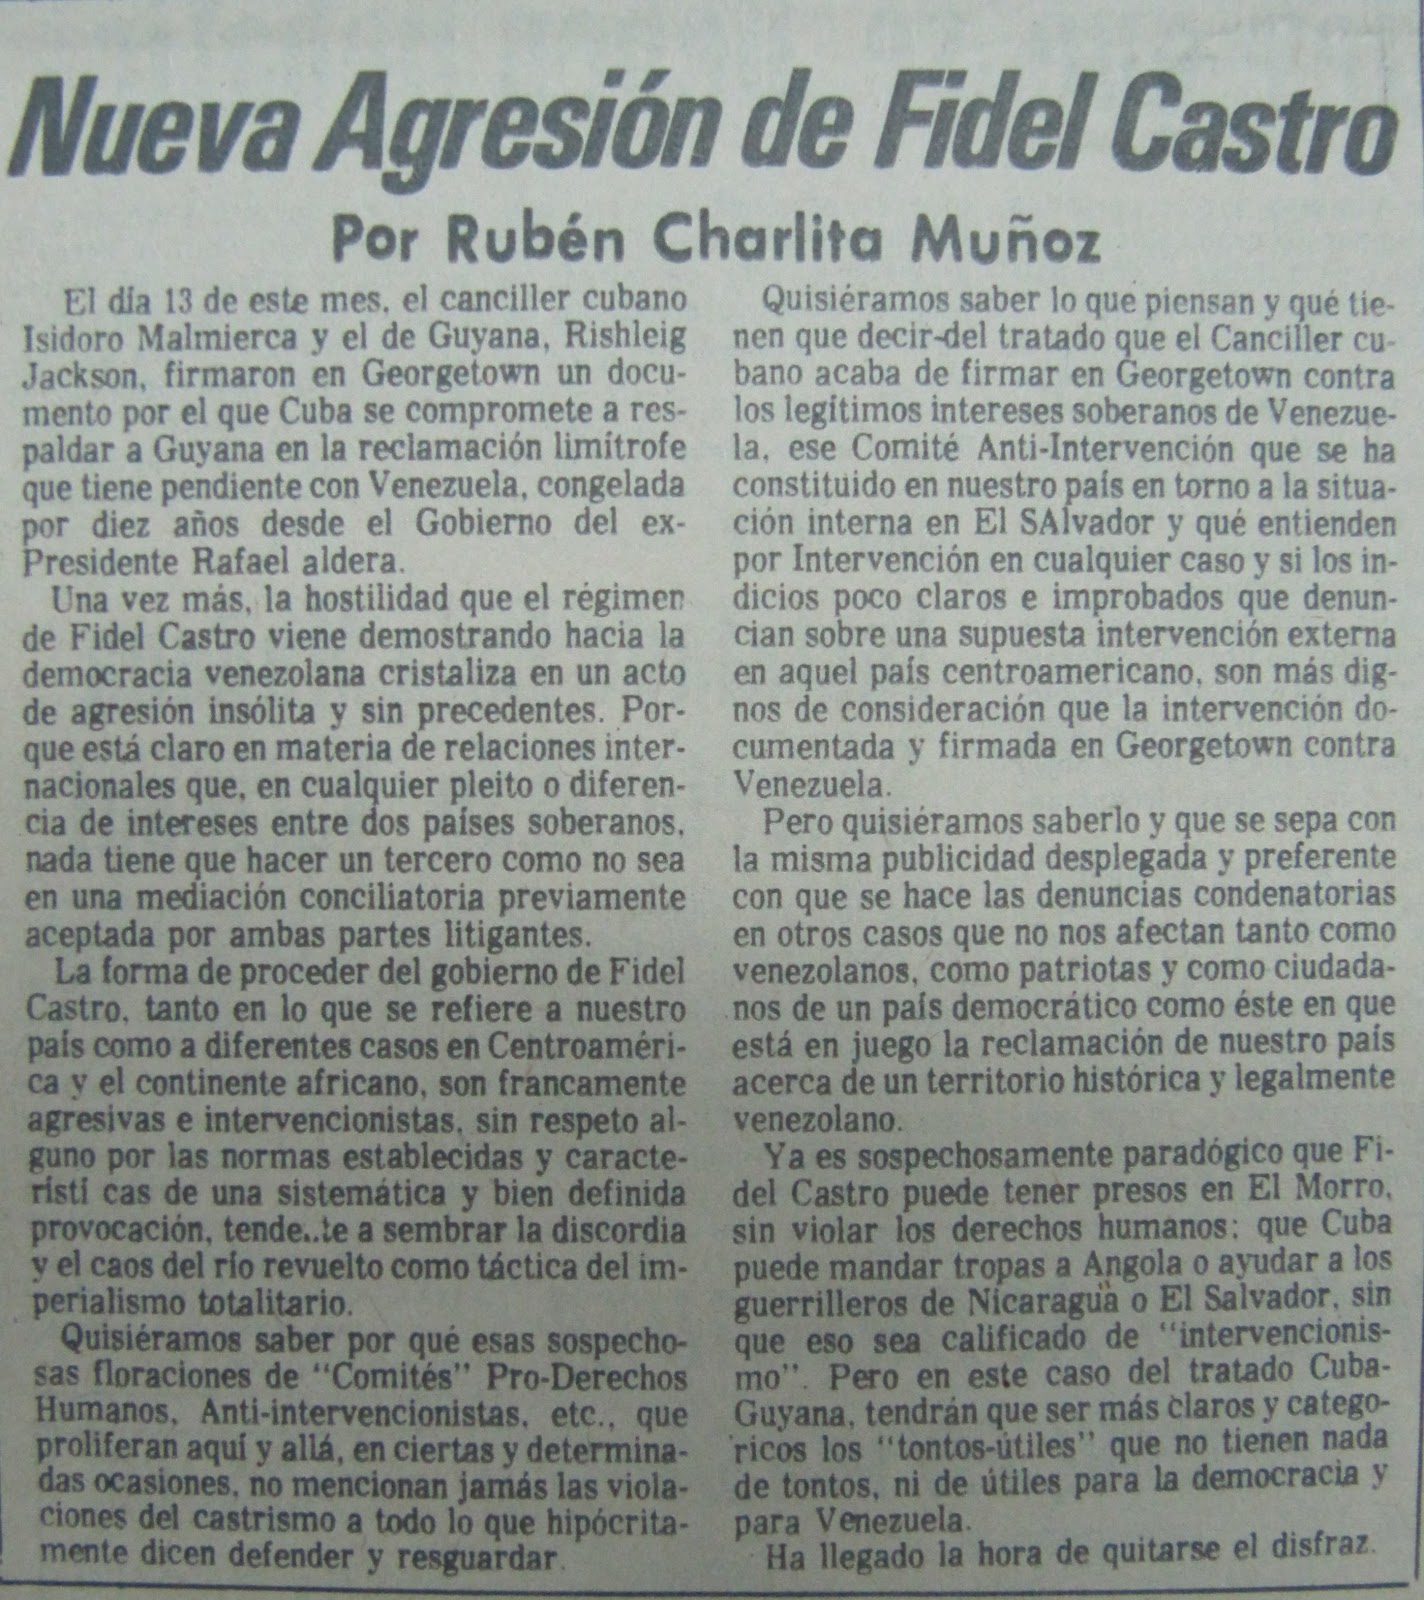 15SEP - Buques Logisticos - Página 23 Ruben+Charlita+Mu%25C3%25B1oz+Nueva+Agrecion+de+Fidel+Castro